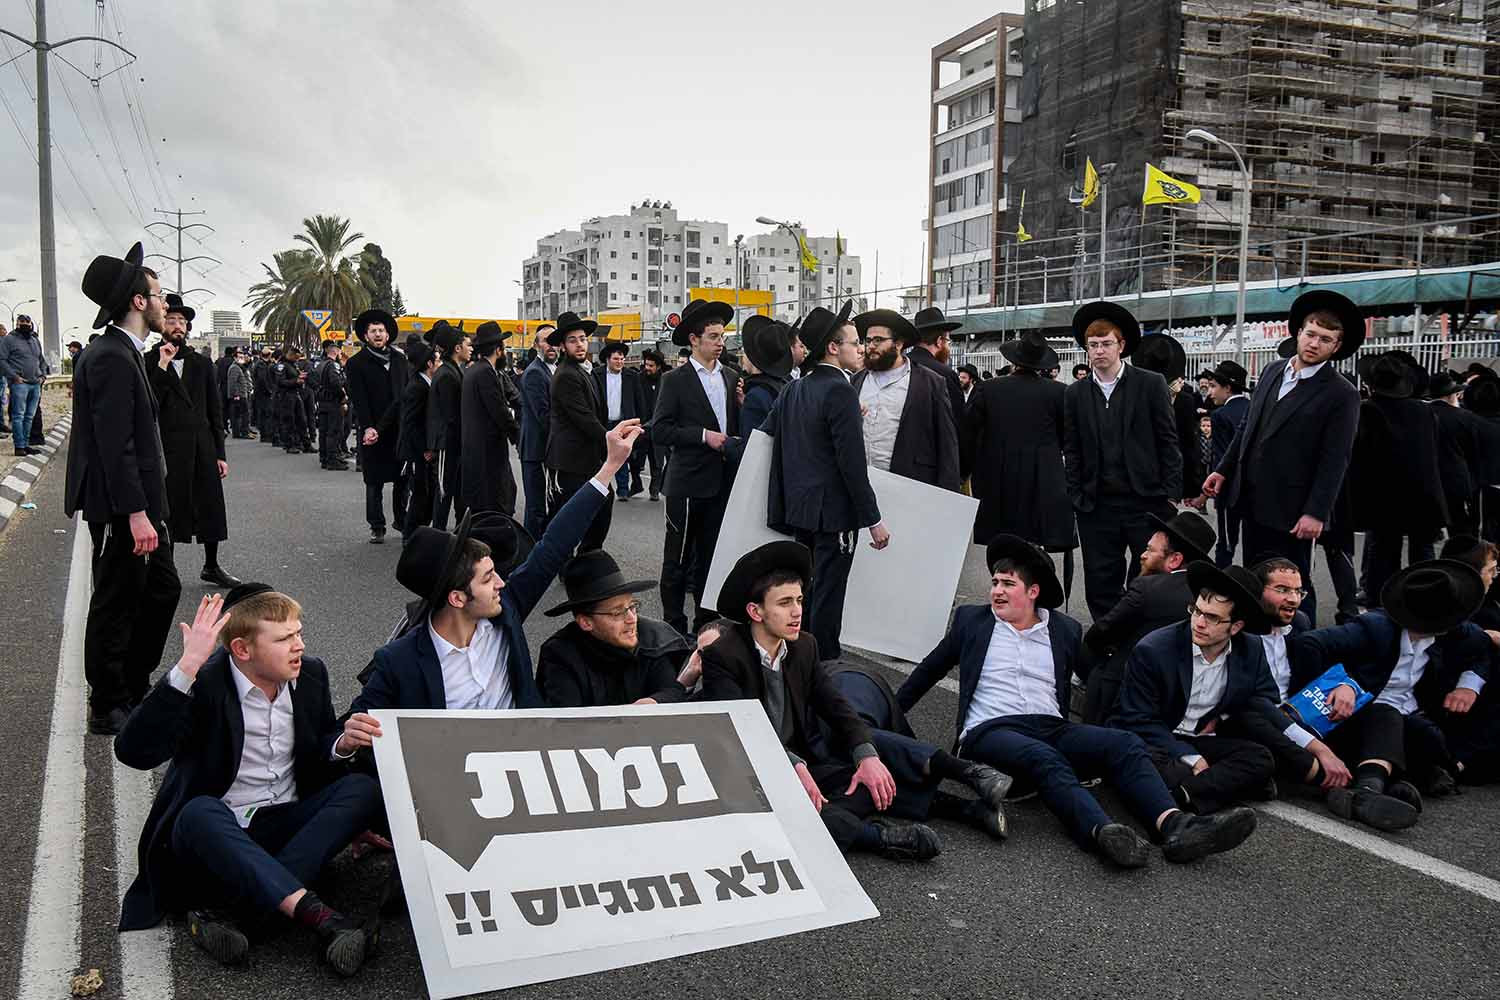 מפגינים חרדים מהפלג הירושלמי חוסמים את כביש 4 במחאה על חוק הגיוס (צילום: פלאש 90)